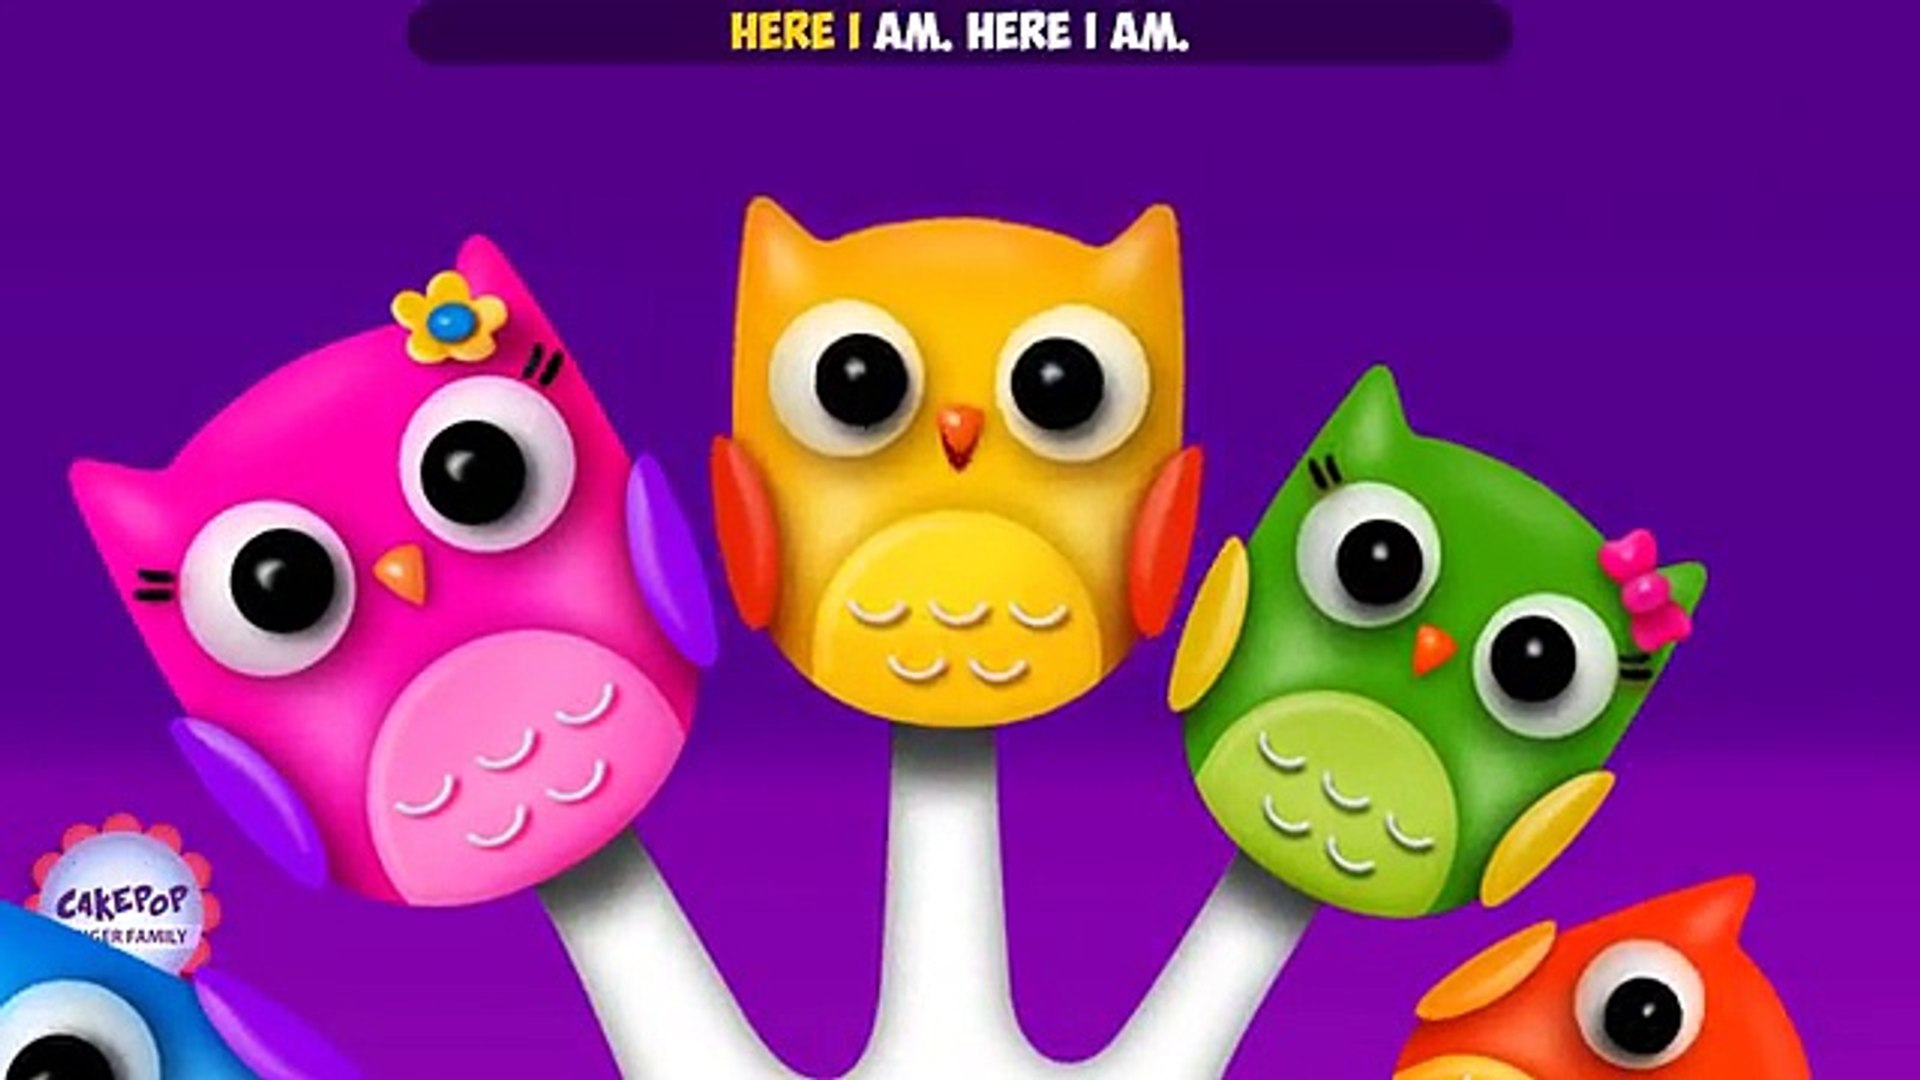 Owl Finger Family Song | Nursery Rhyme | Owl Cake Pop Finger Family Songs  for kids - video Dailymotion